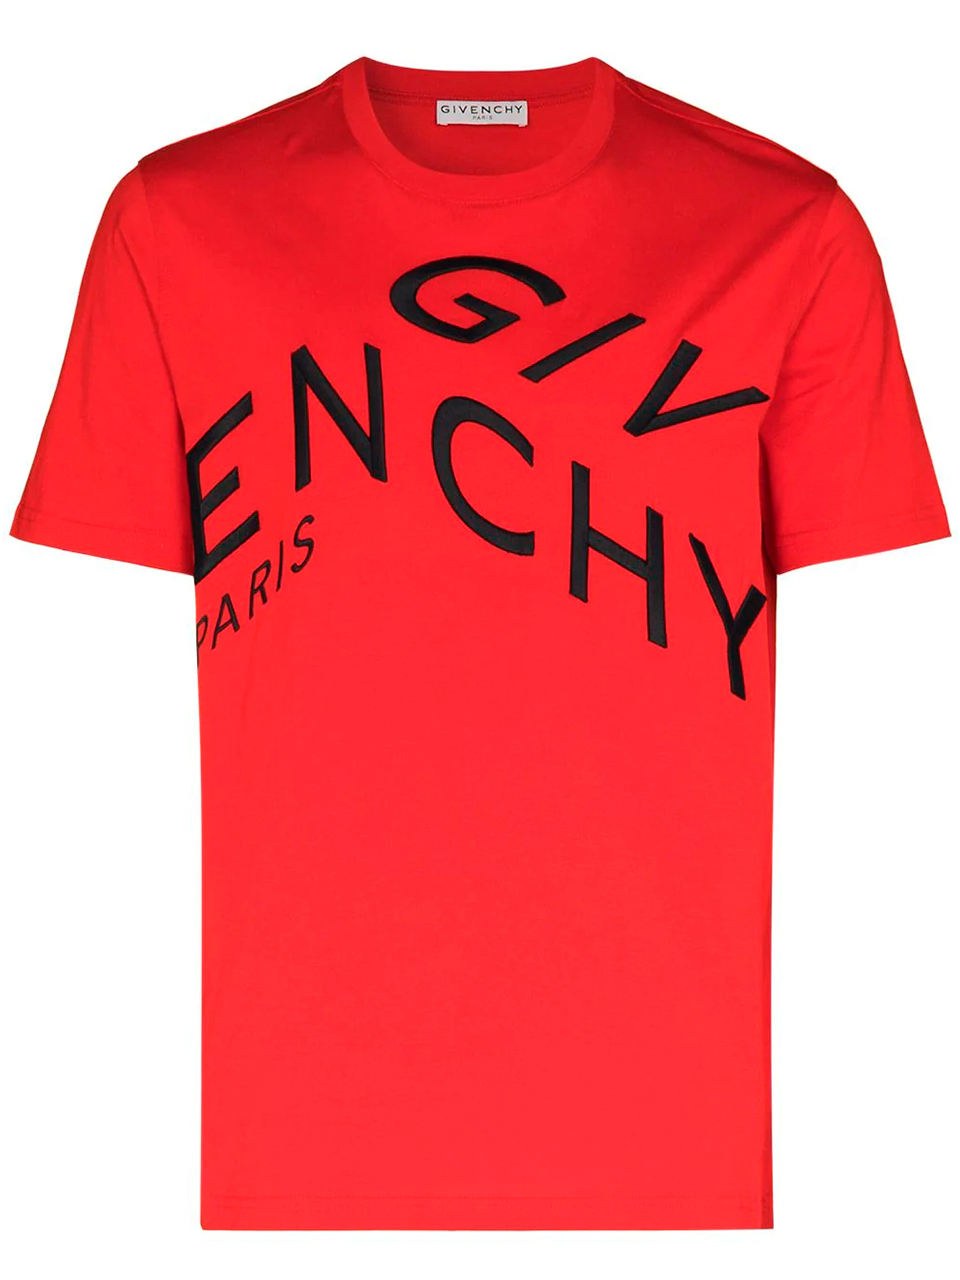 Imagem de: Camiseta Givenchy Vermelha com Bordado Abstrato